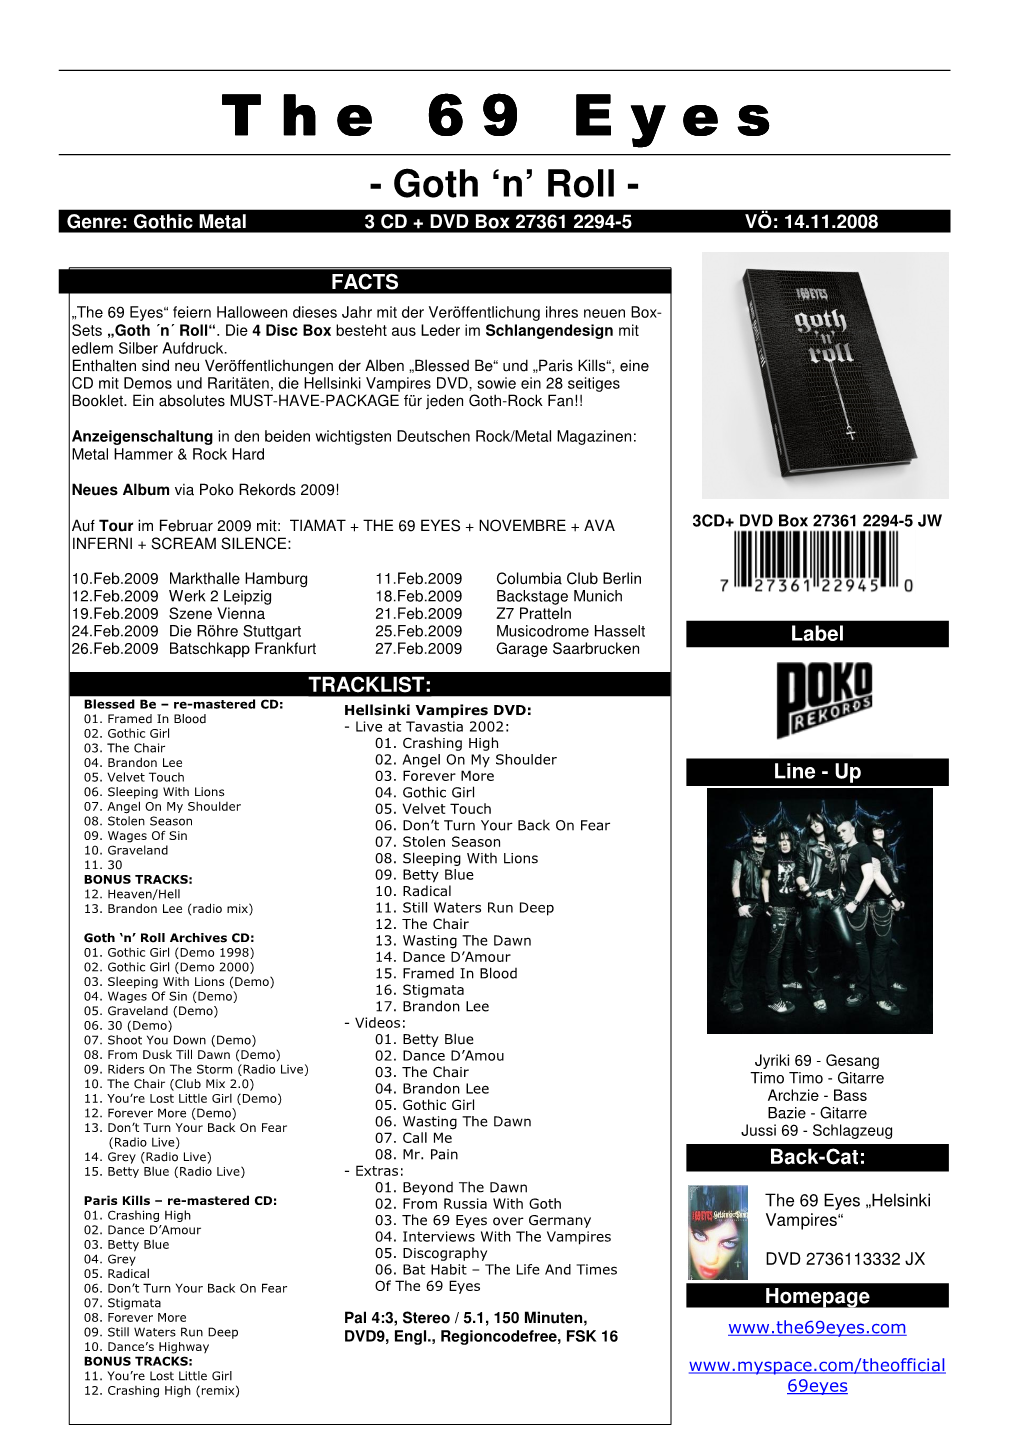 The 69 Eyes - Goth ‘N’ Roll - Genre: Gothic Metal 3 CD + DVD Box 27361 2294-5 VÖ: 14.11.2008